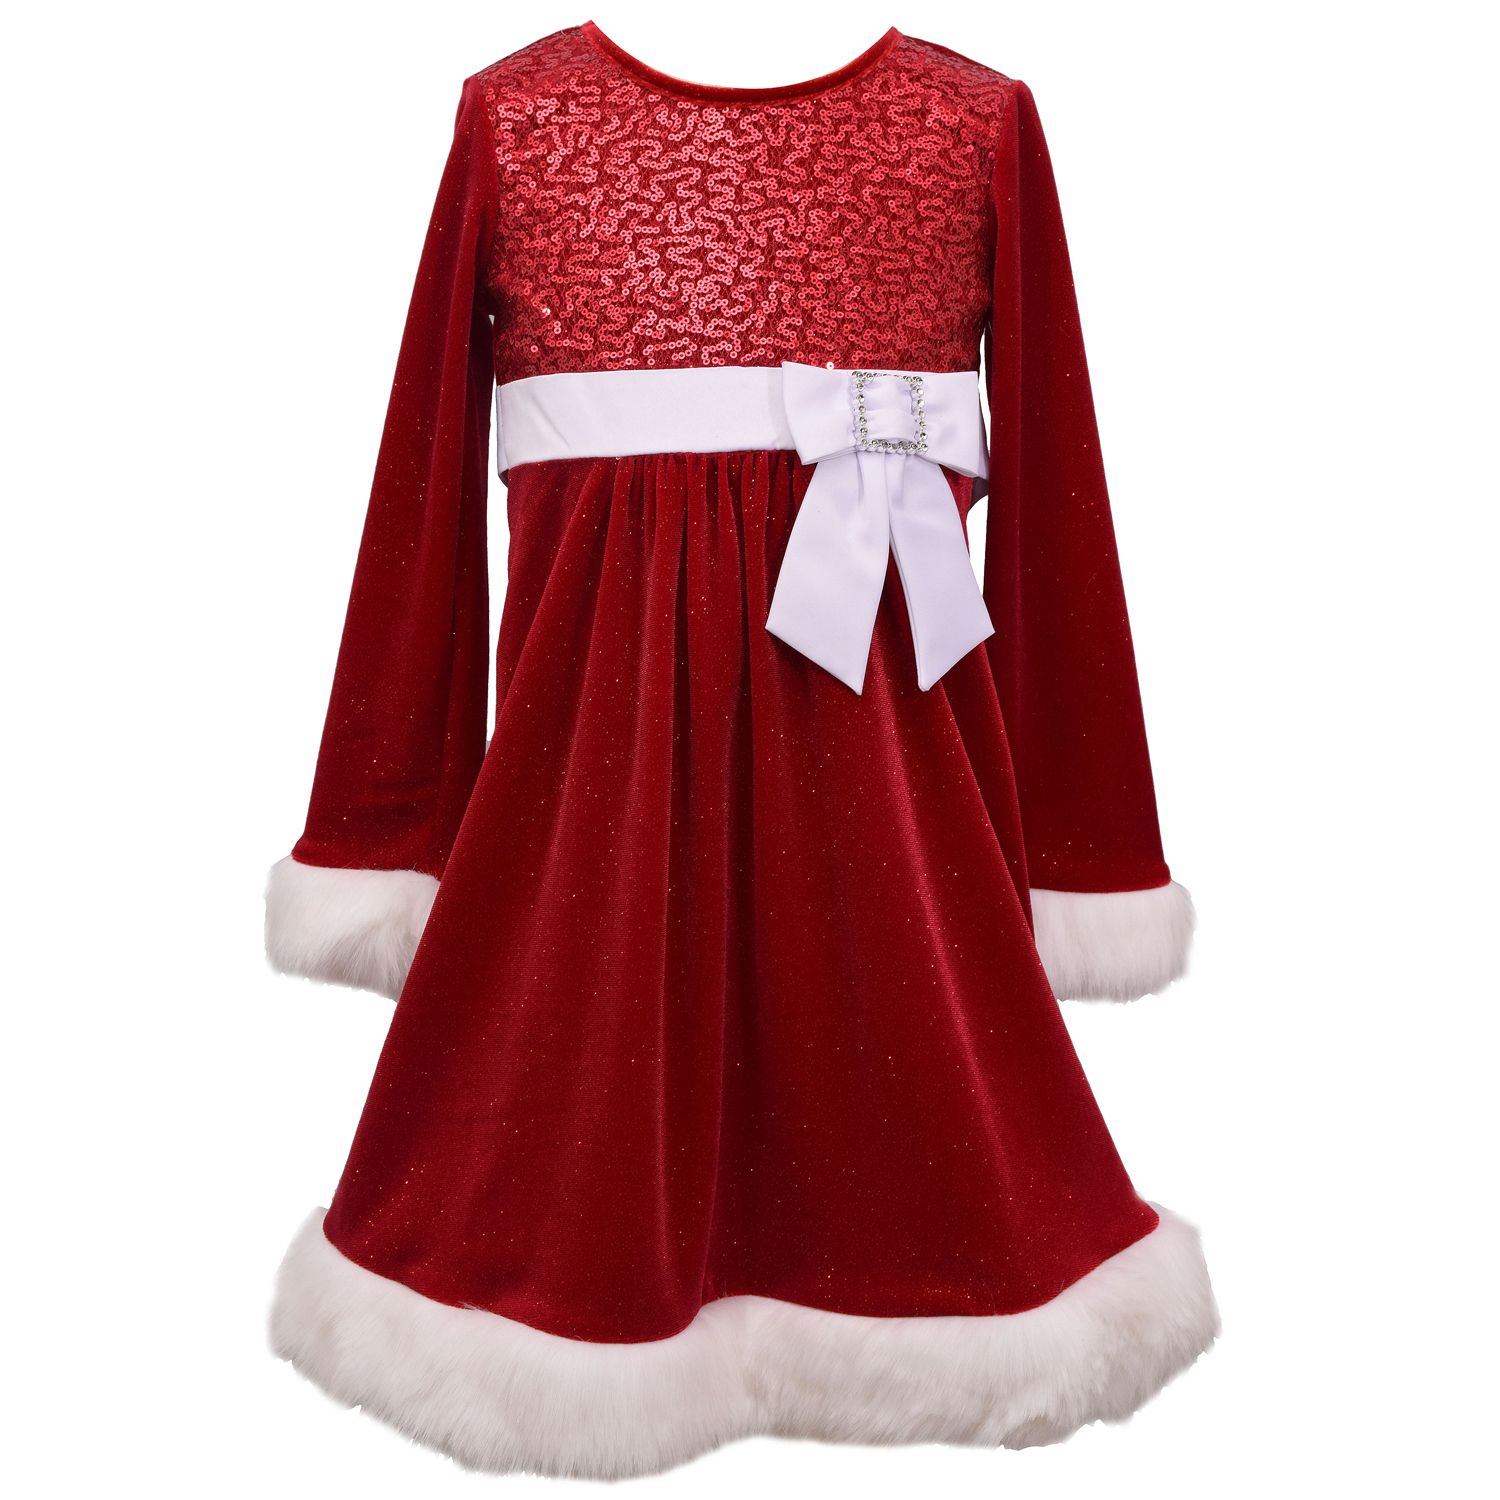 holiday dresses at kohls